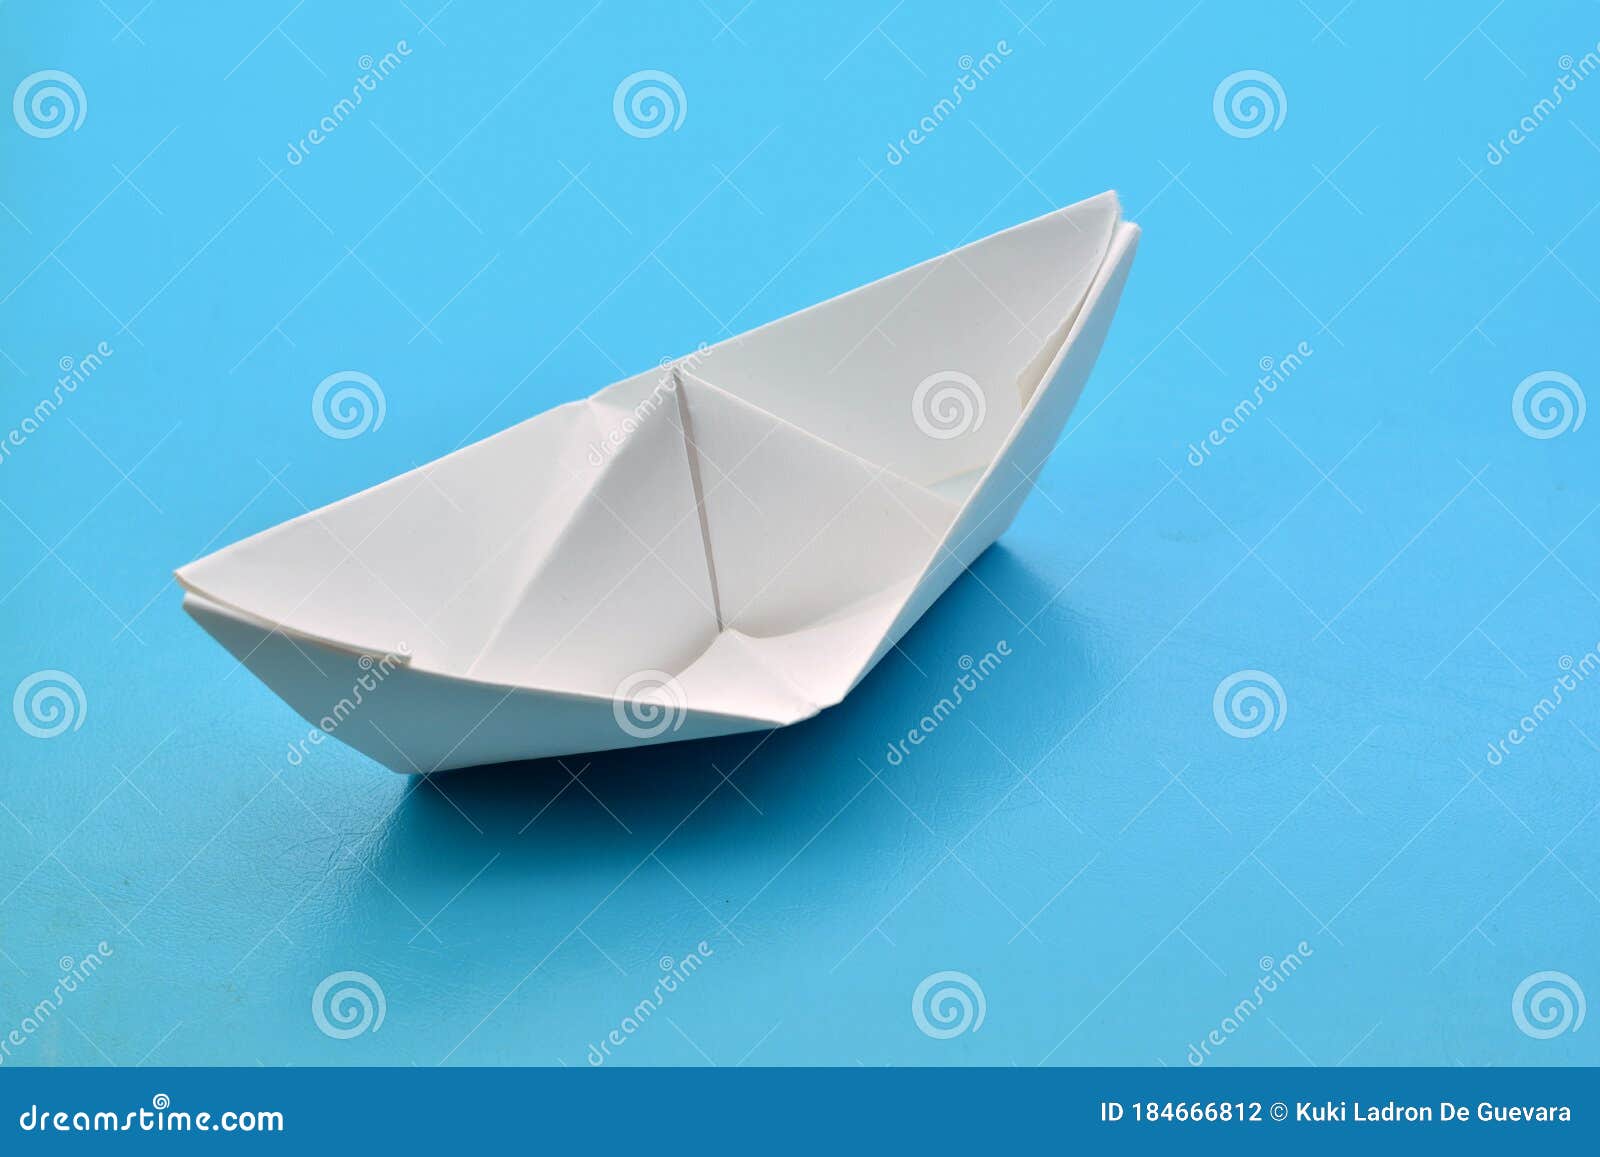 barco de papel sobre fondo azul